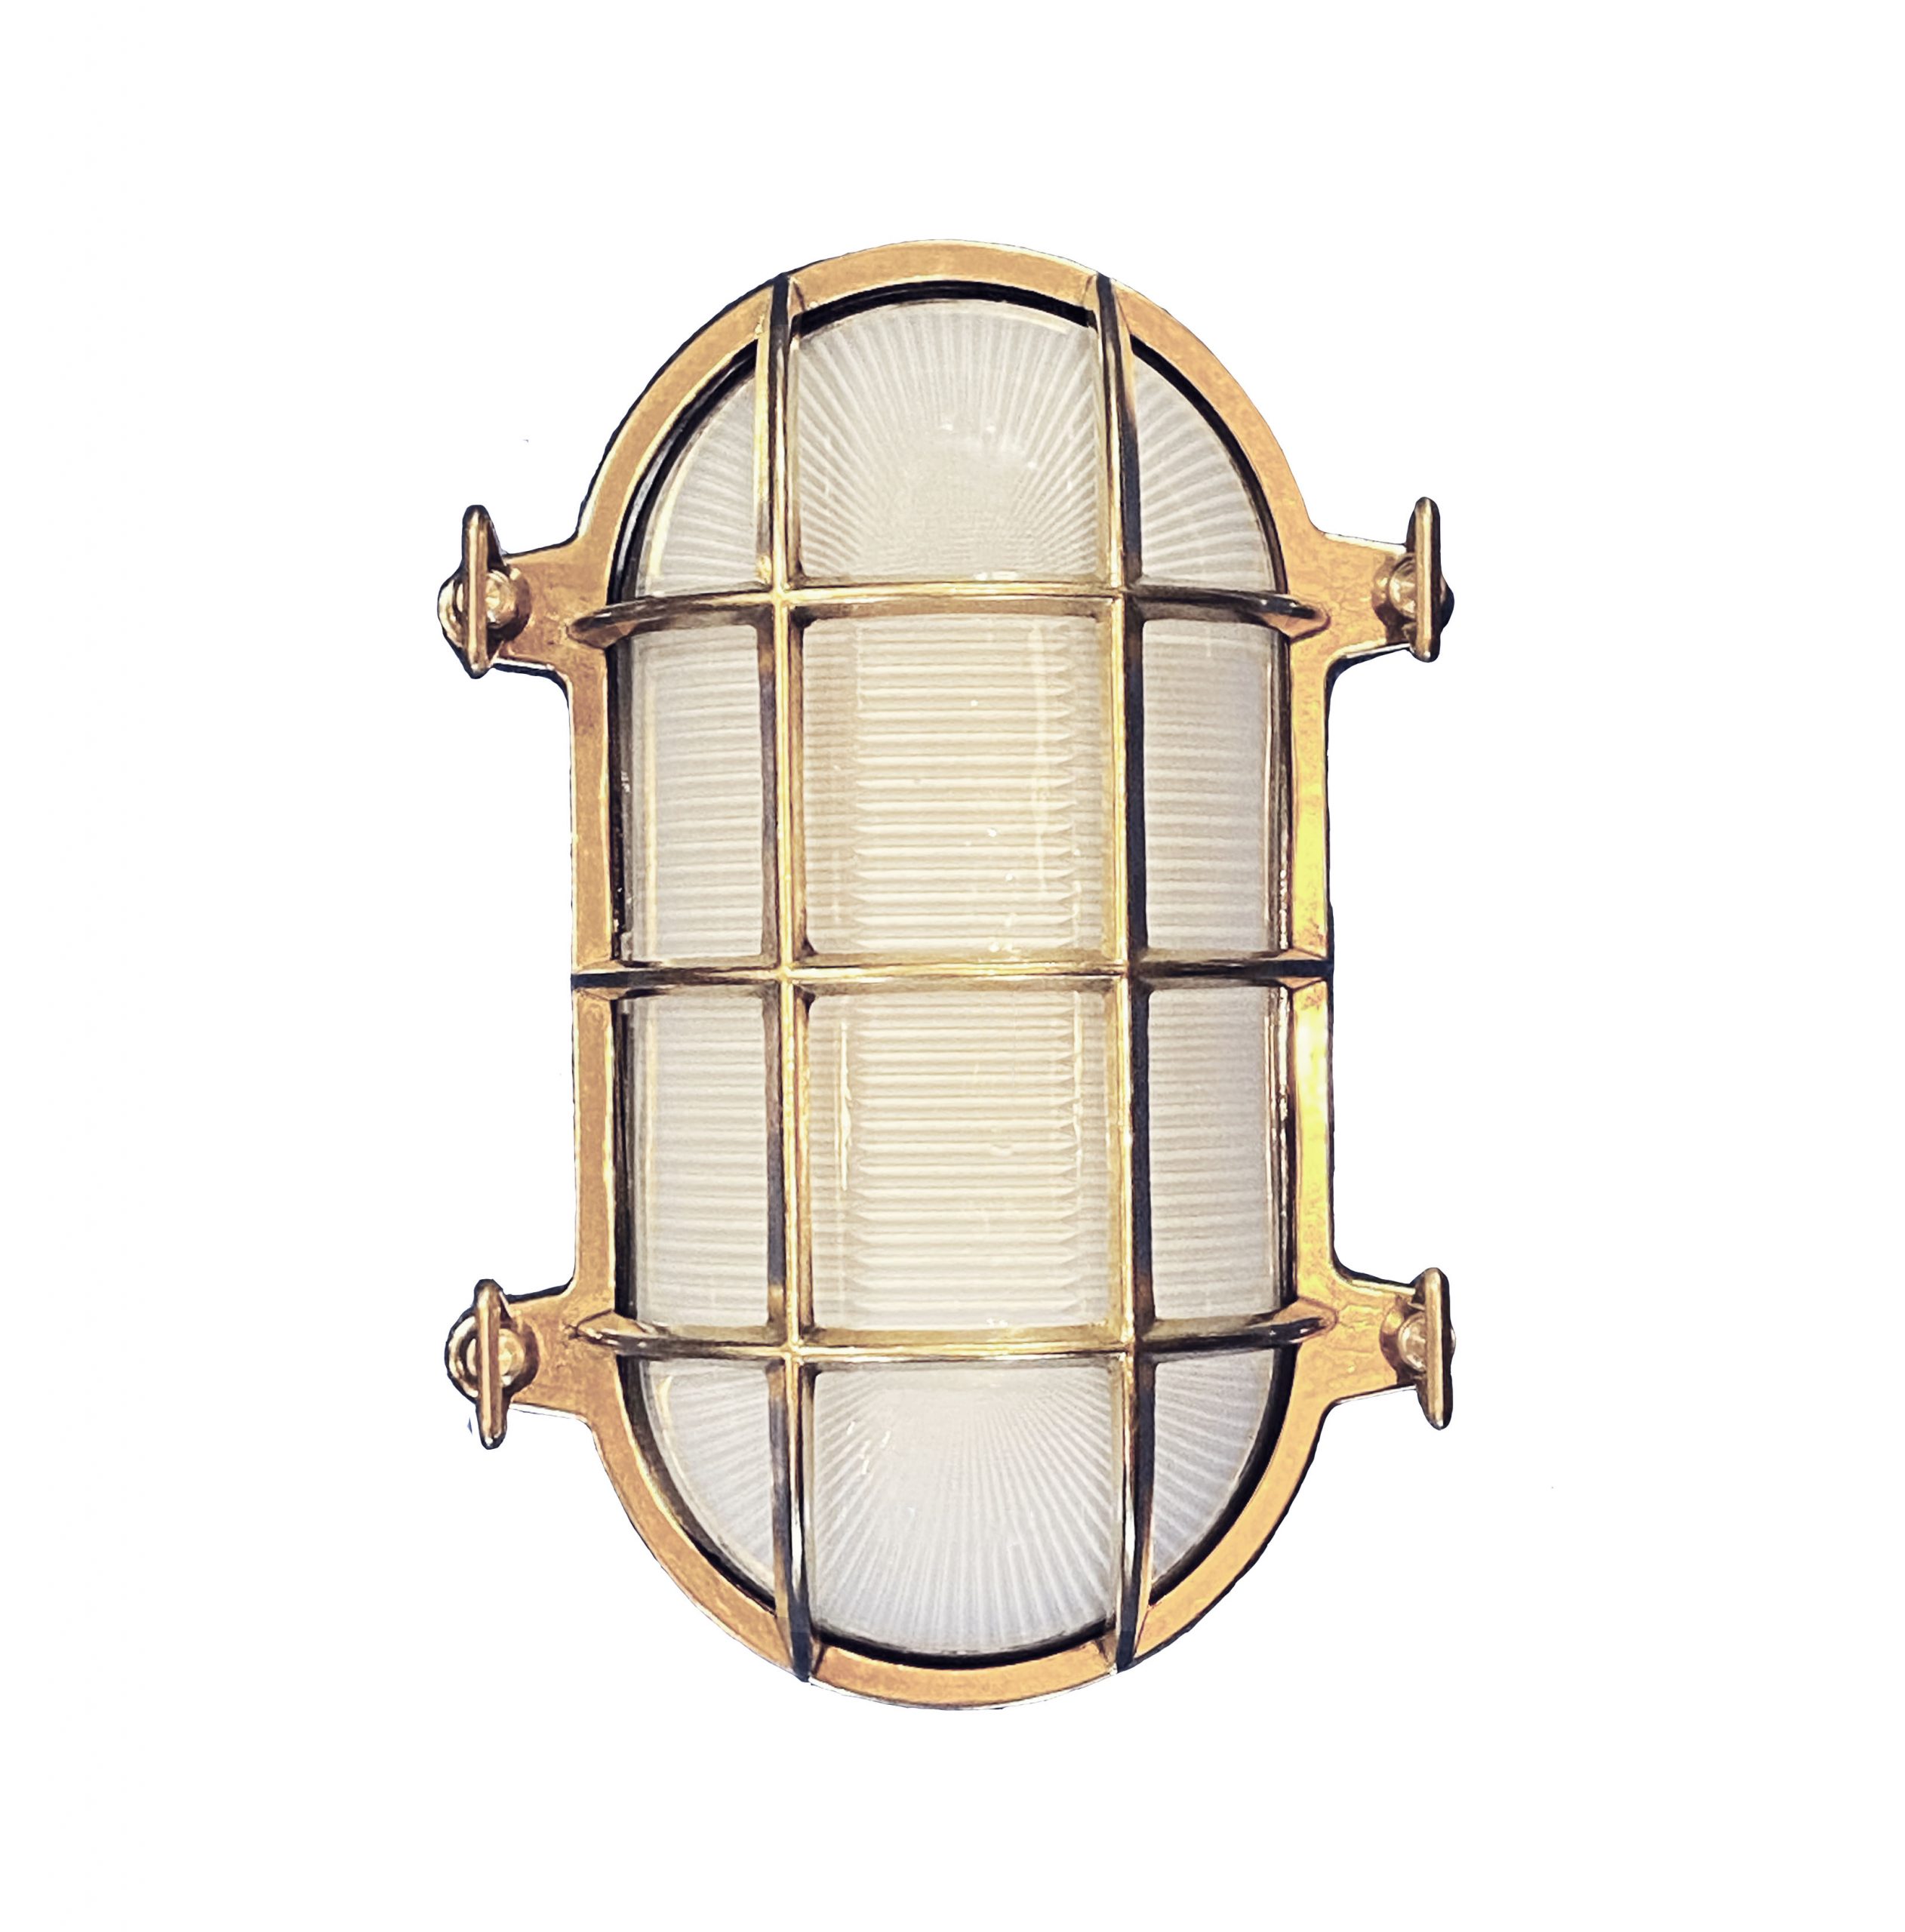 Oval Bulkhead Light (Medium) - Shiplights